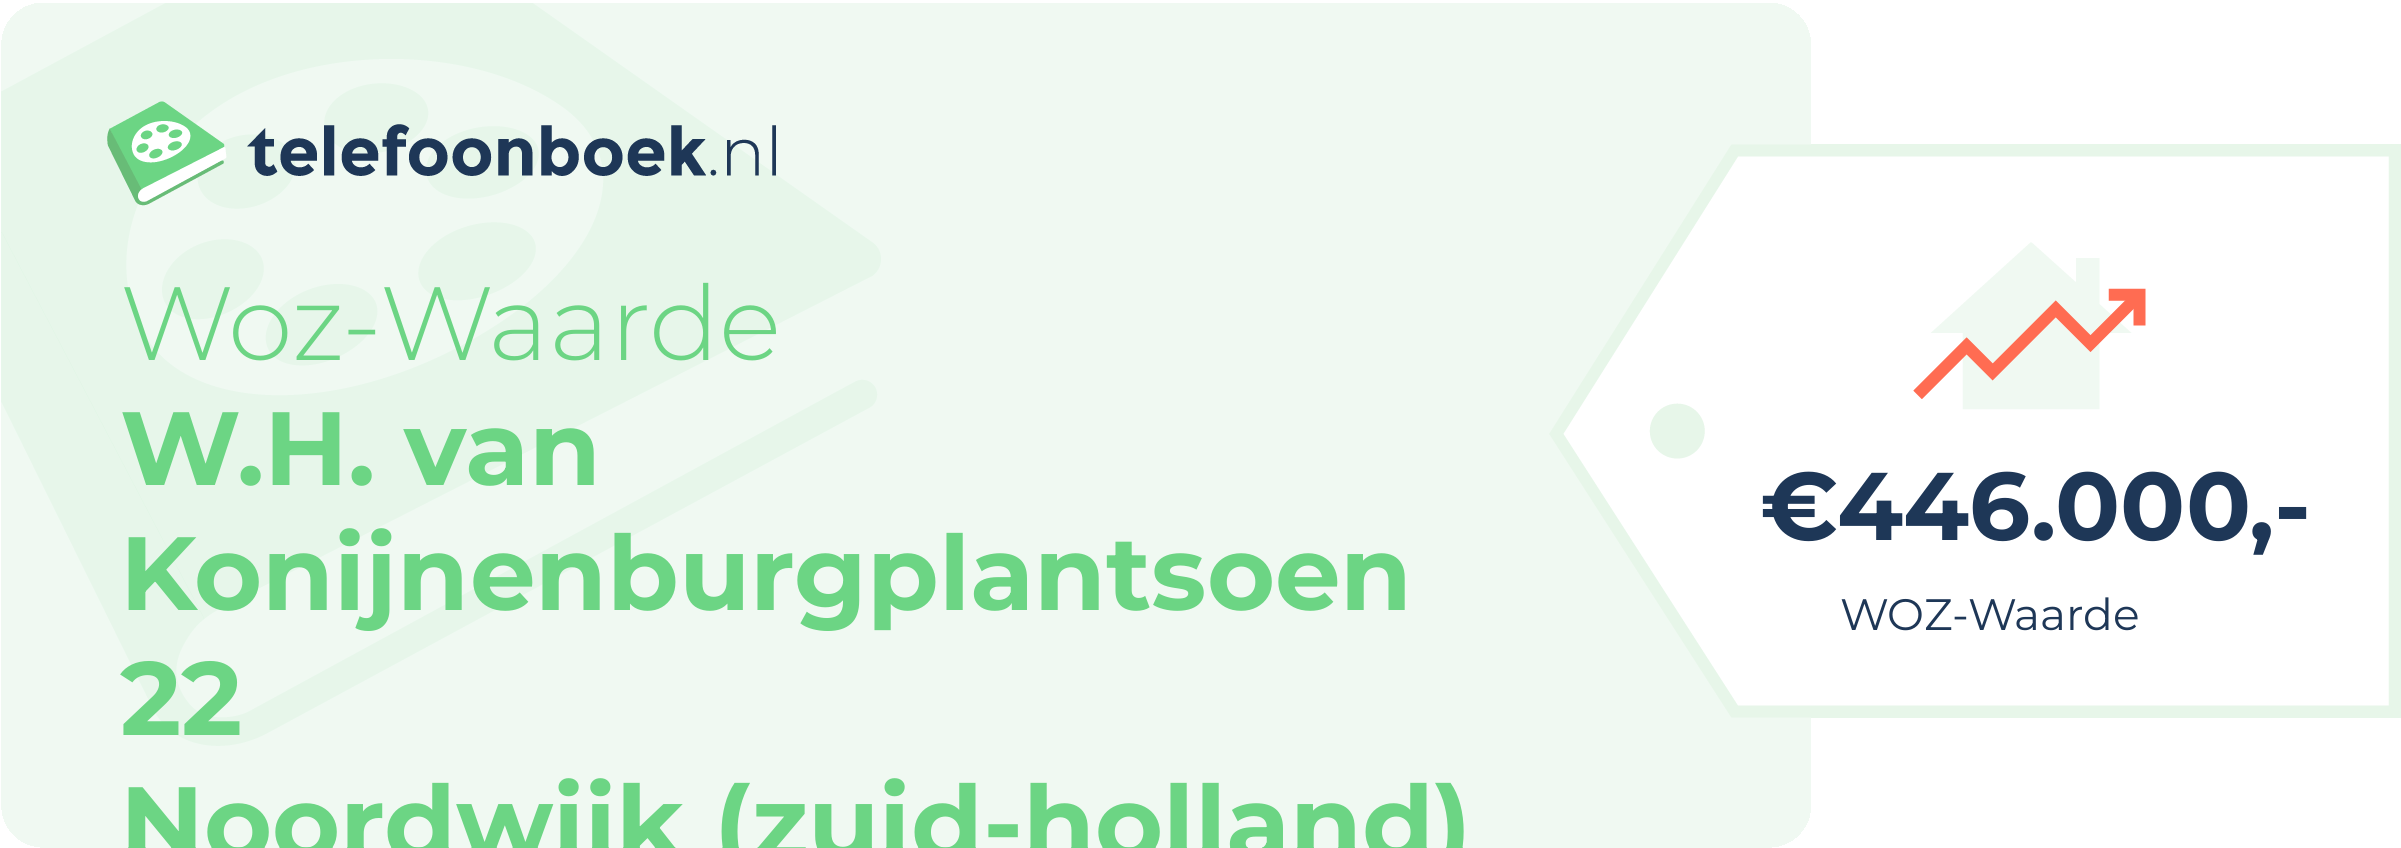 WOZ-waarde W.H. Van Konijnenburgplantsoen 22 Noordwijk (Zuid-Holland)